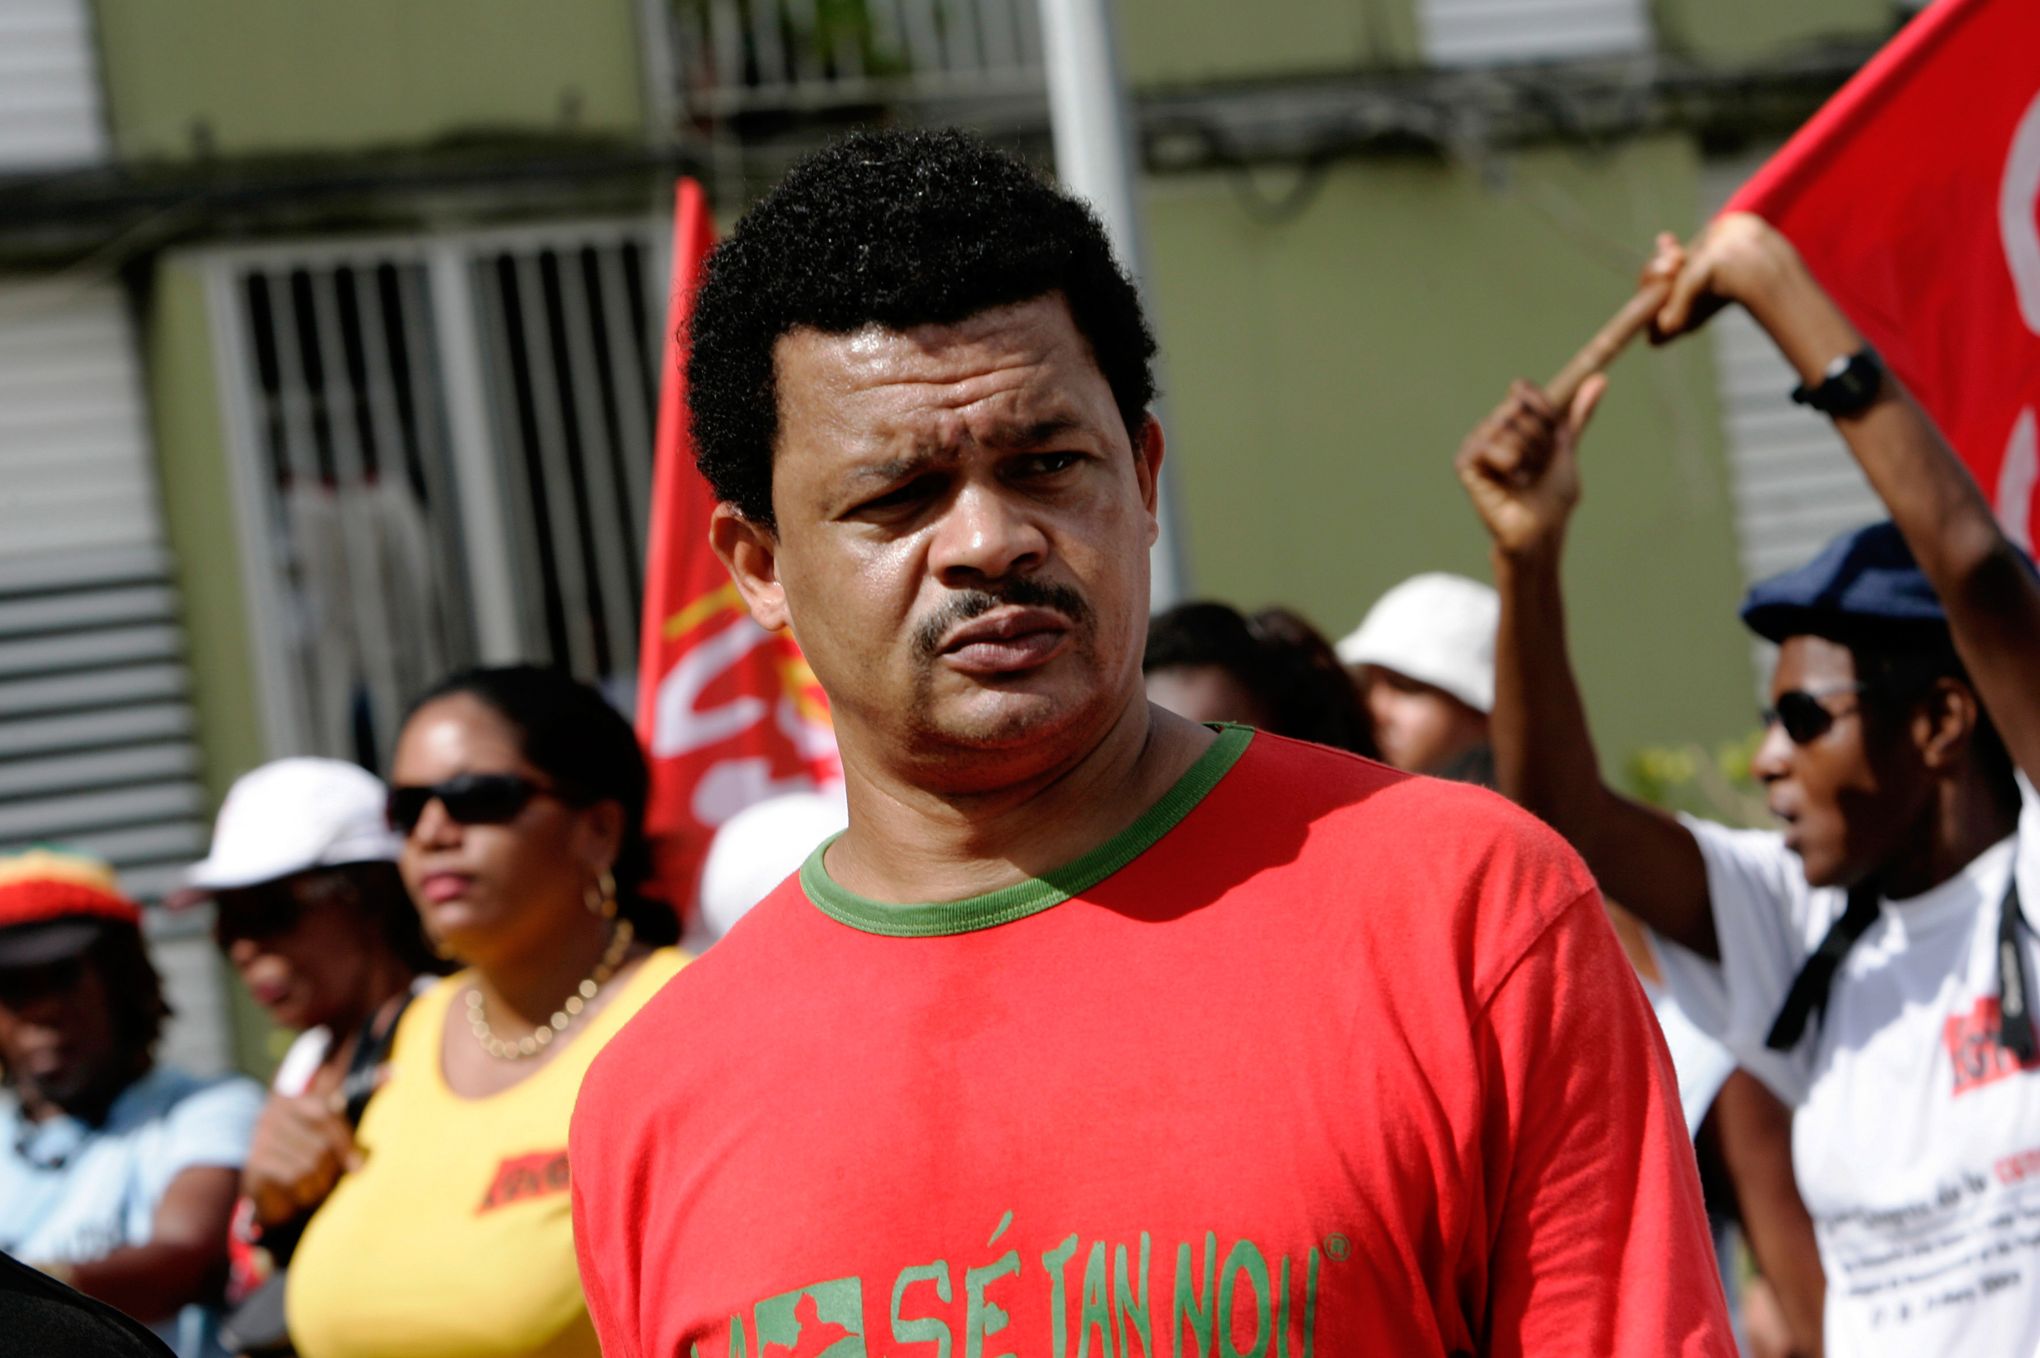 [Vidéo] Crise sociale en Guyane: En Guadeloupe, le LKP soutient les collectifs guyanais